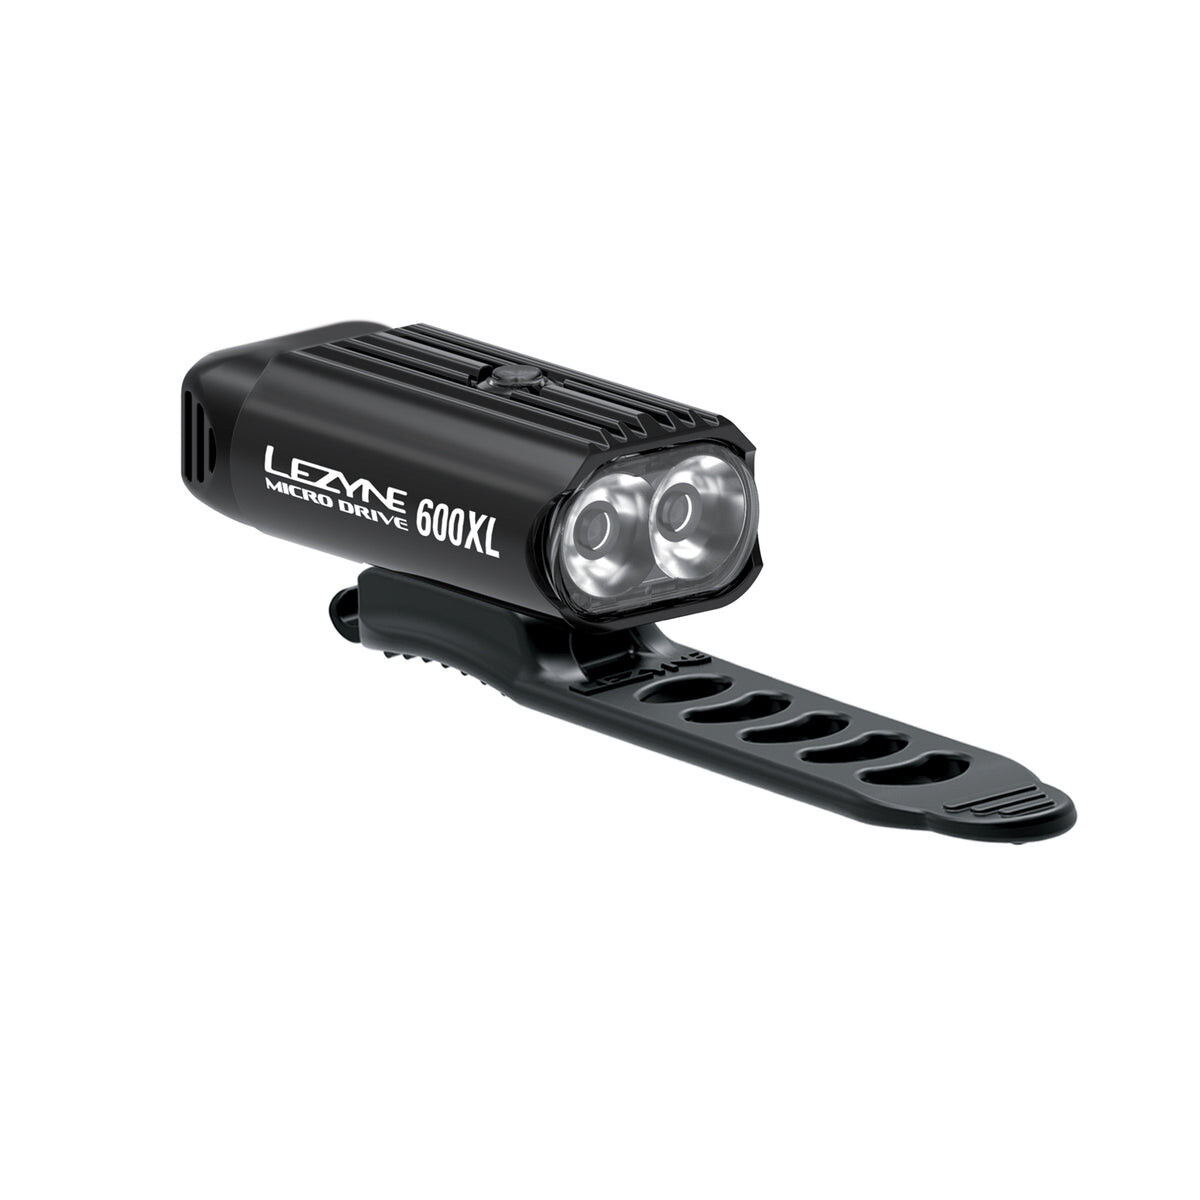 Lezyne Micro Drive 600XL - Cykelbelysningssats | Hardloop